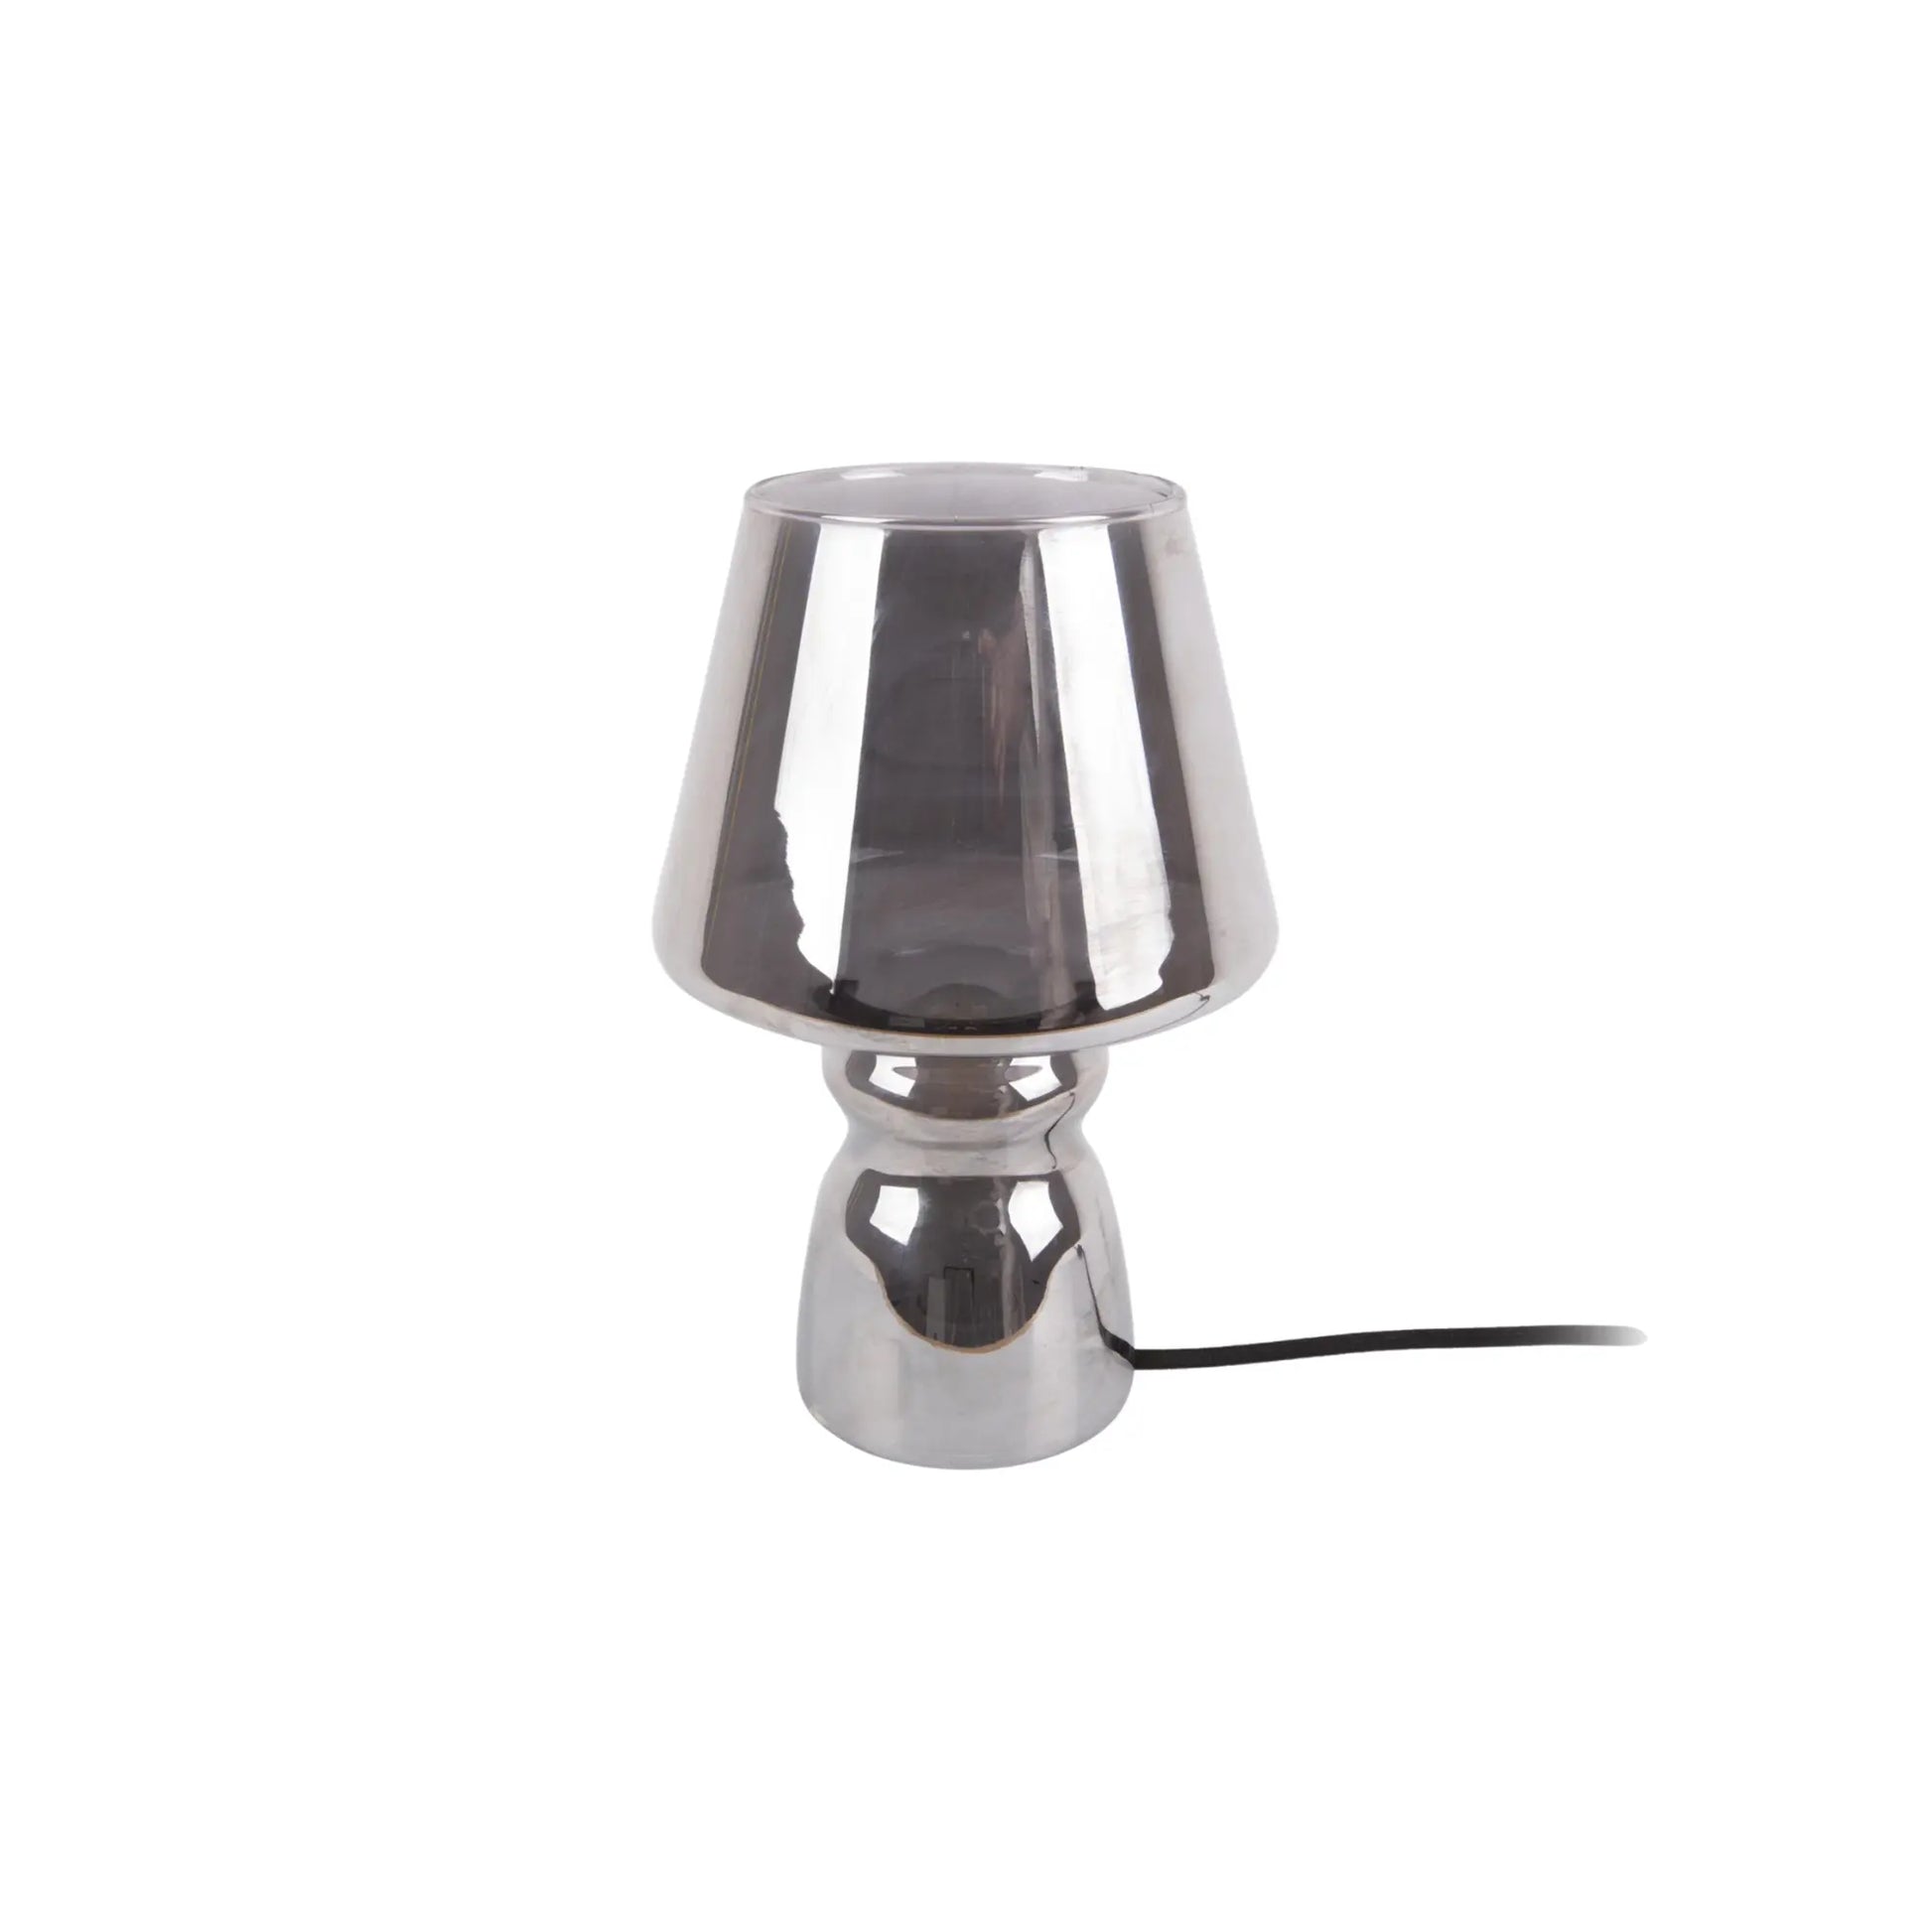  Leitmotiv | Glazen tafellamp met chroom afwerking | Conceptstore Sisällä